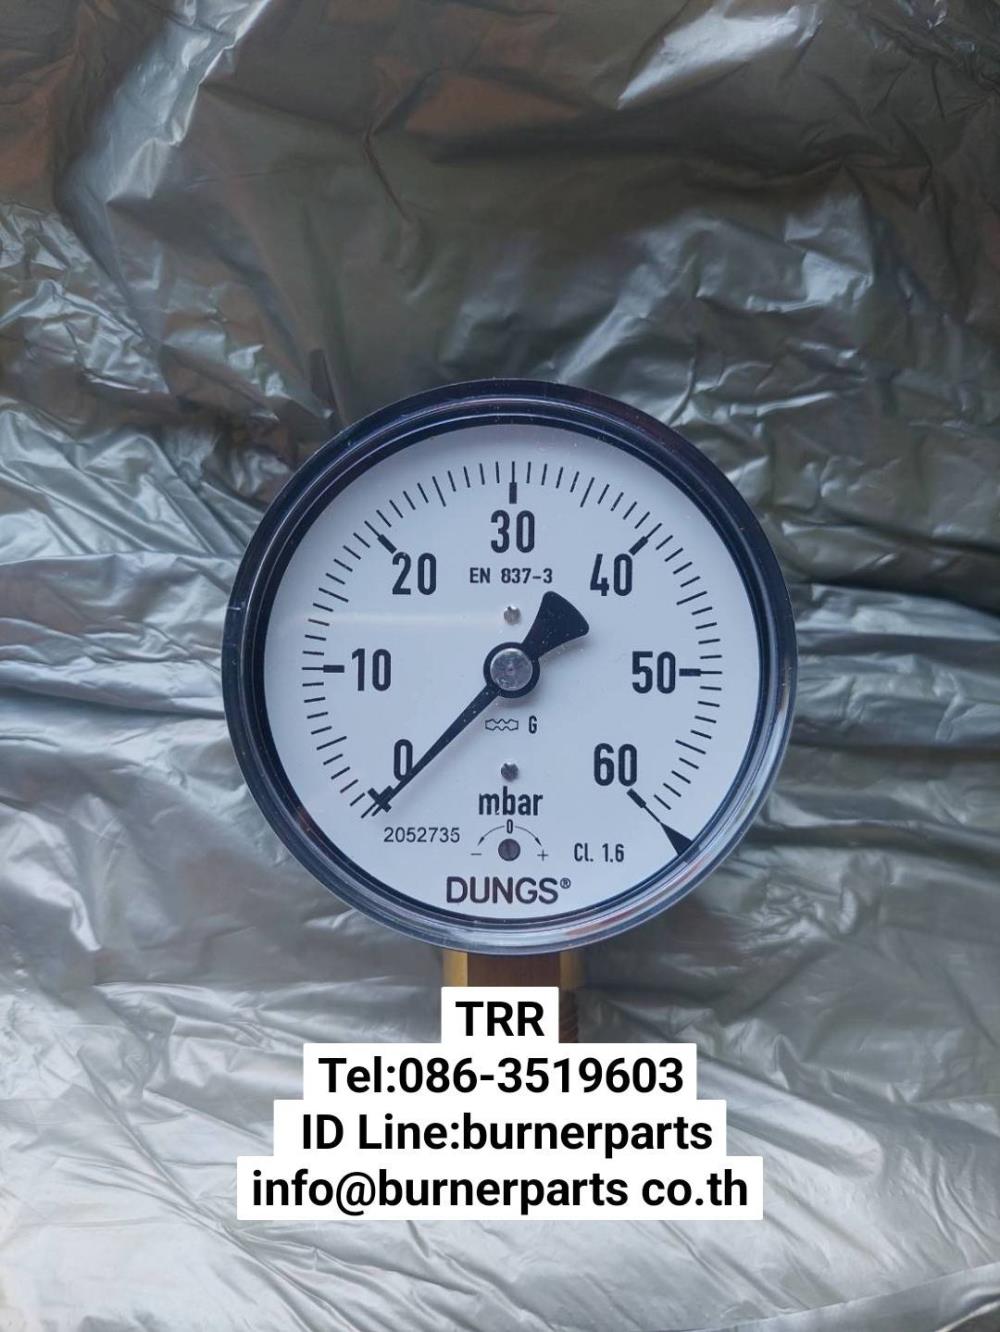 Dungs Pressure gauge 0-60 mbar,Dungs Pressure gauge 0-60 mbar,Dungs Pressure gauge 0-60 mbar,Instruments and Controls/Gauges